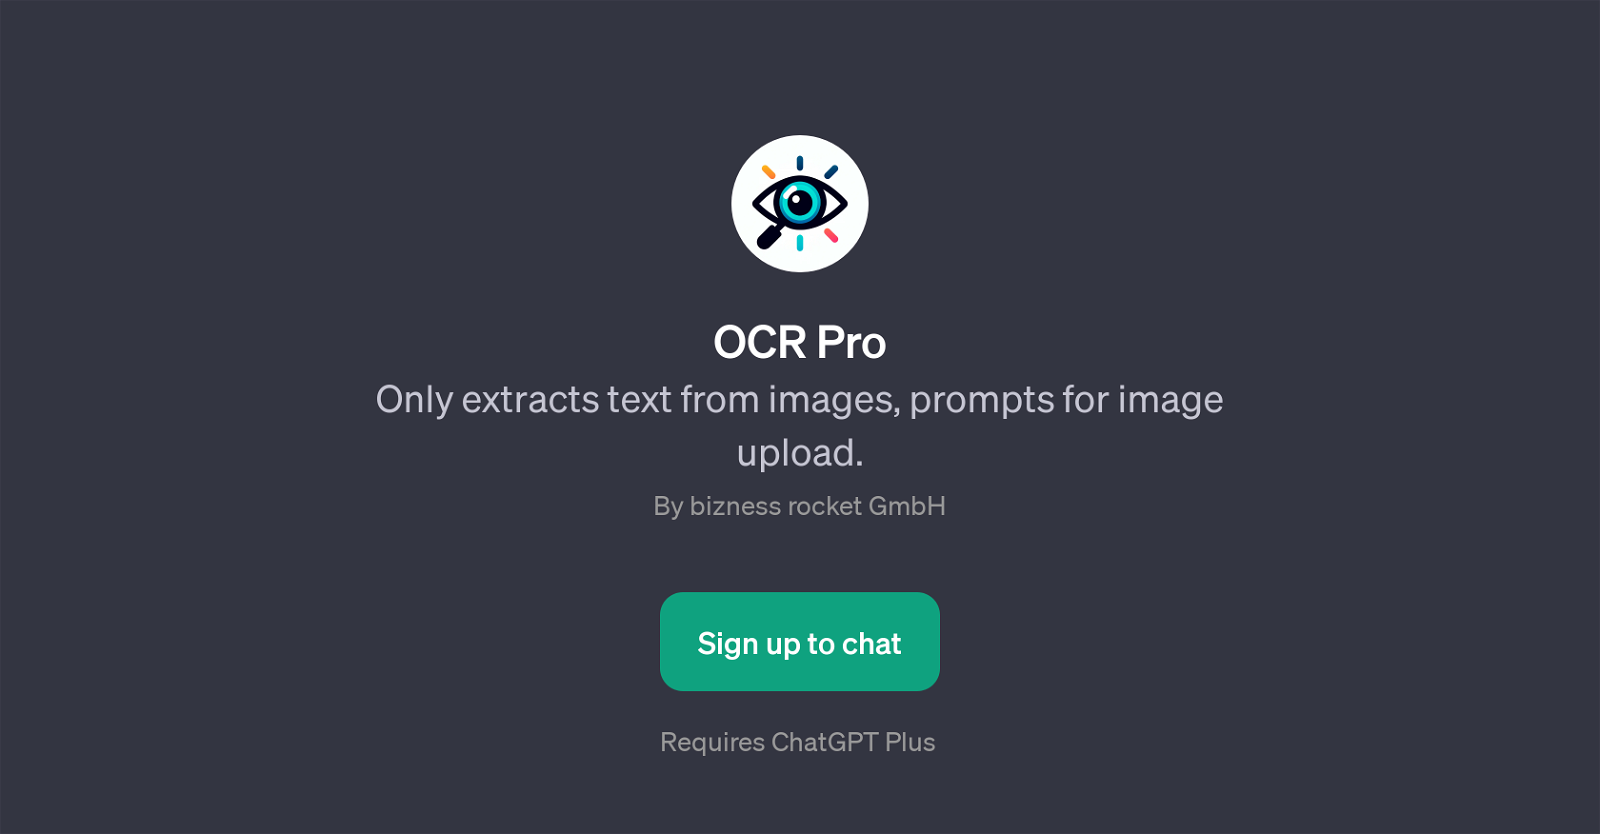 OCR Pro website